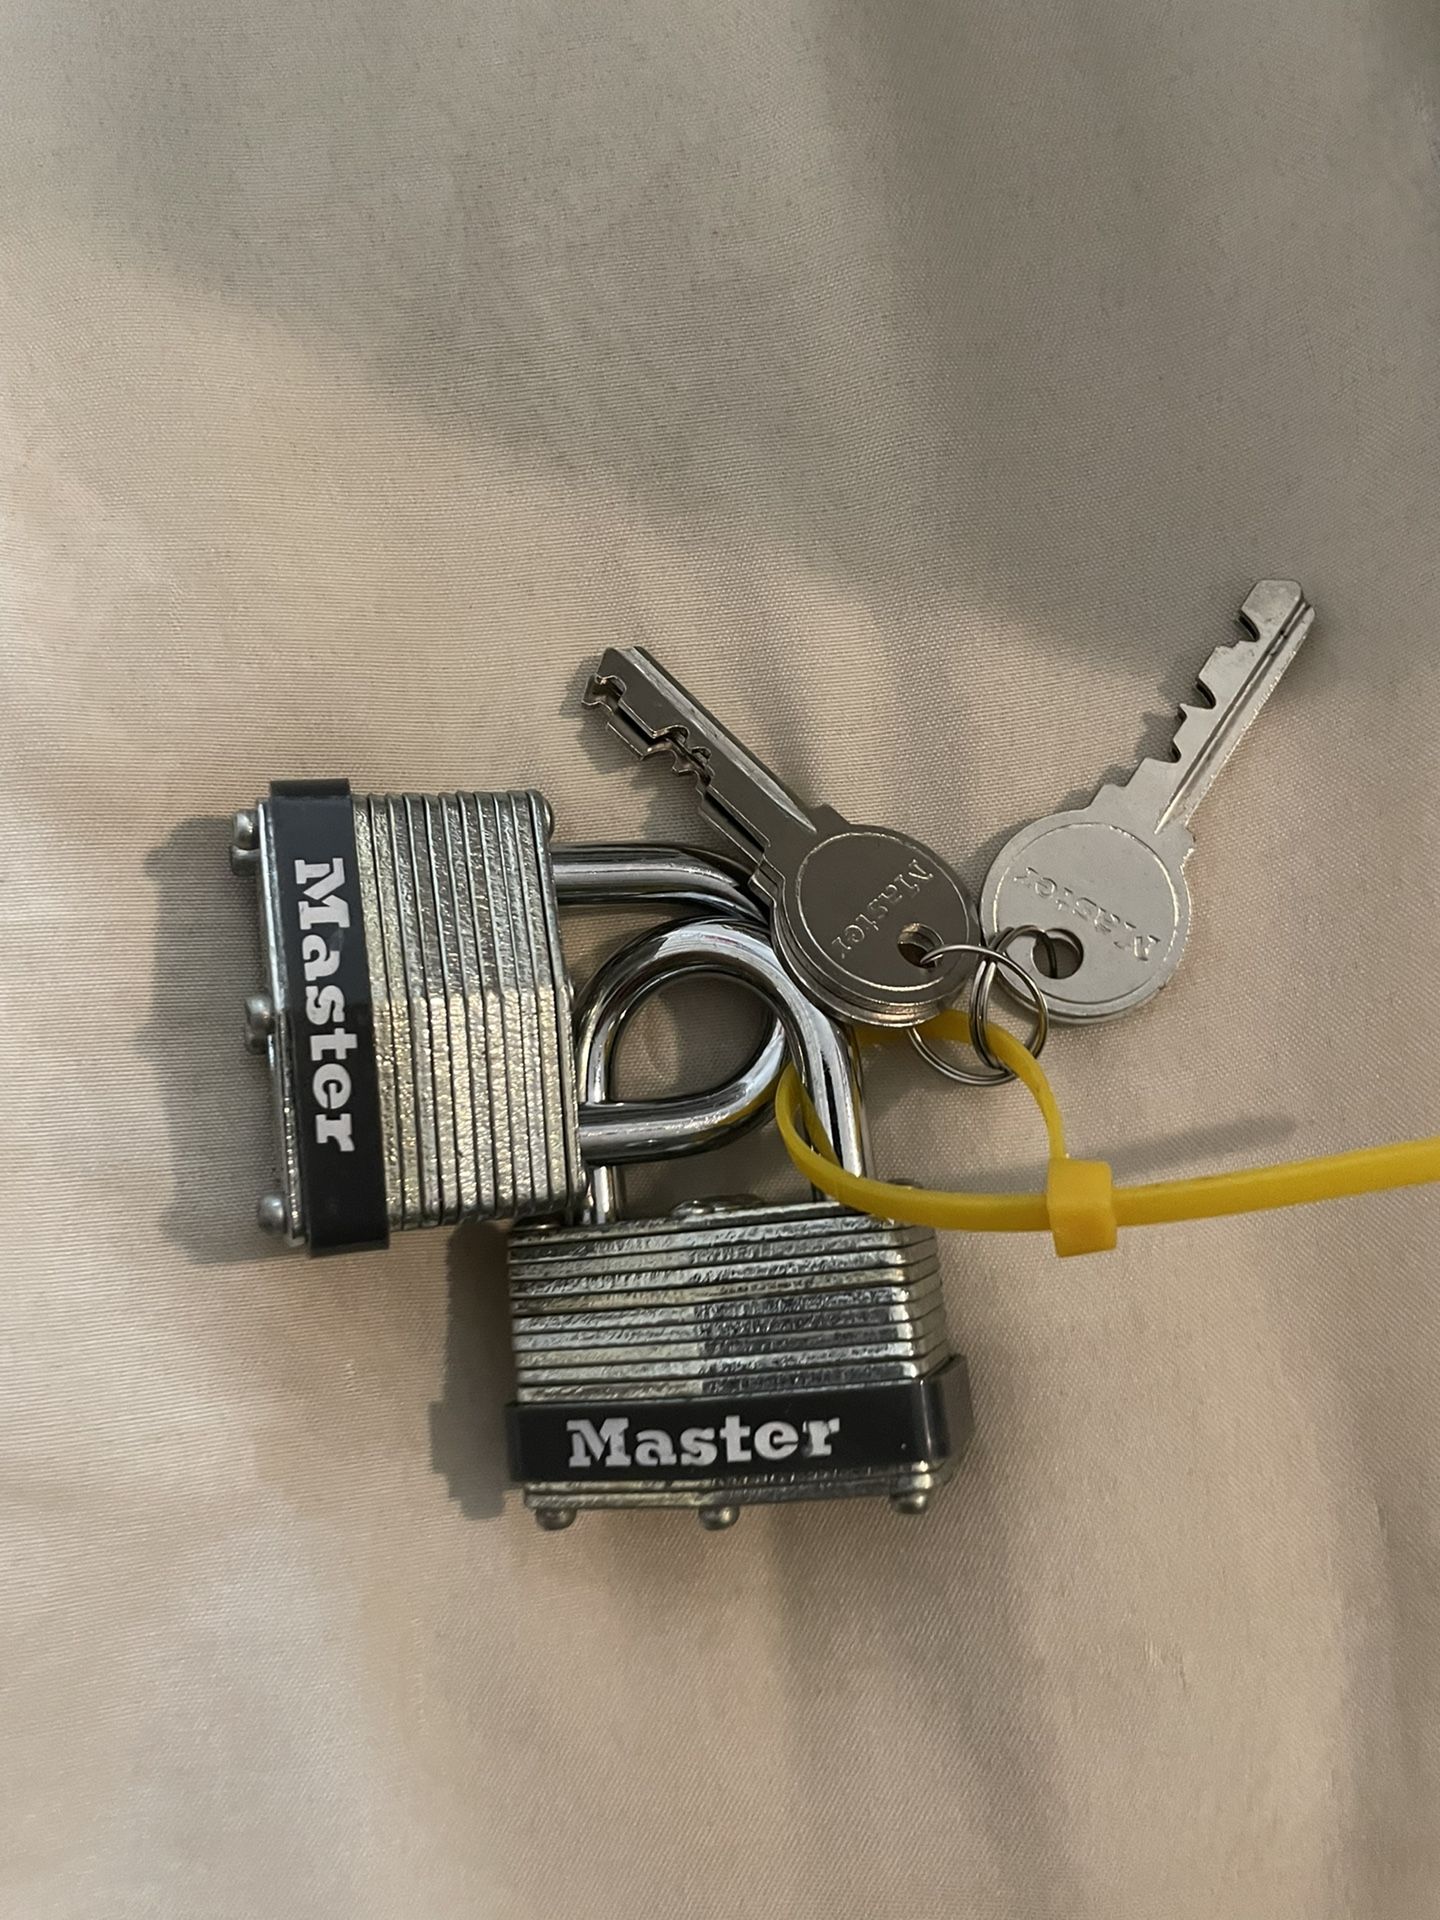 2 - Master Locks 40mm